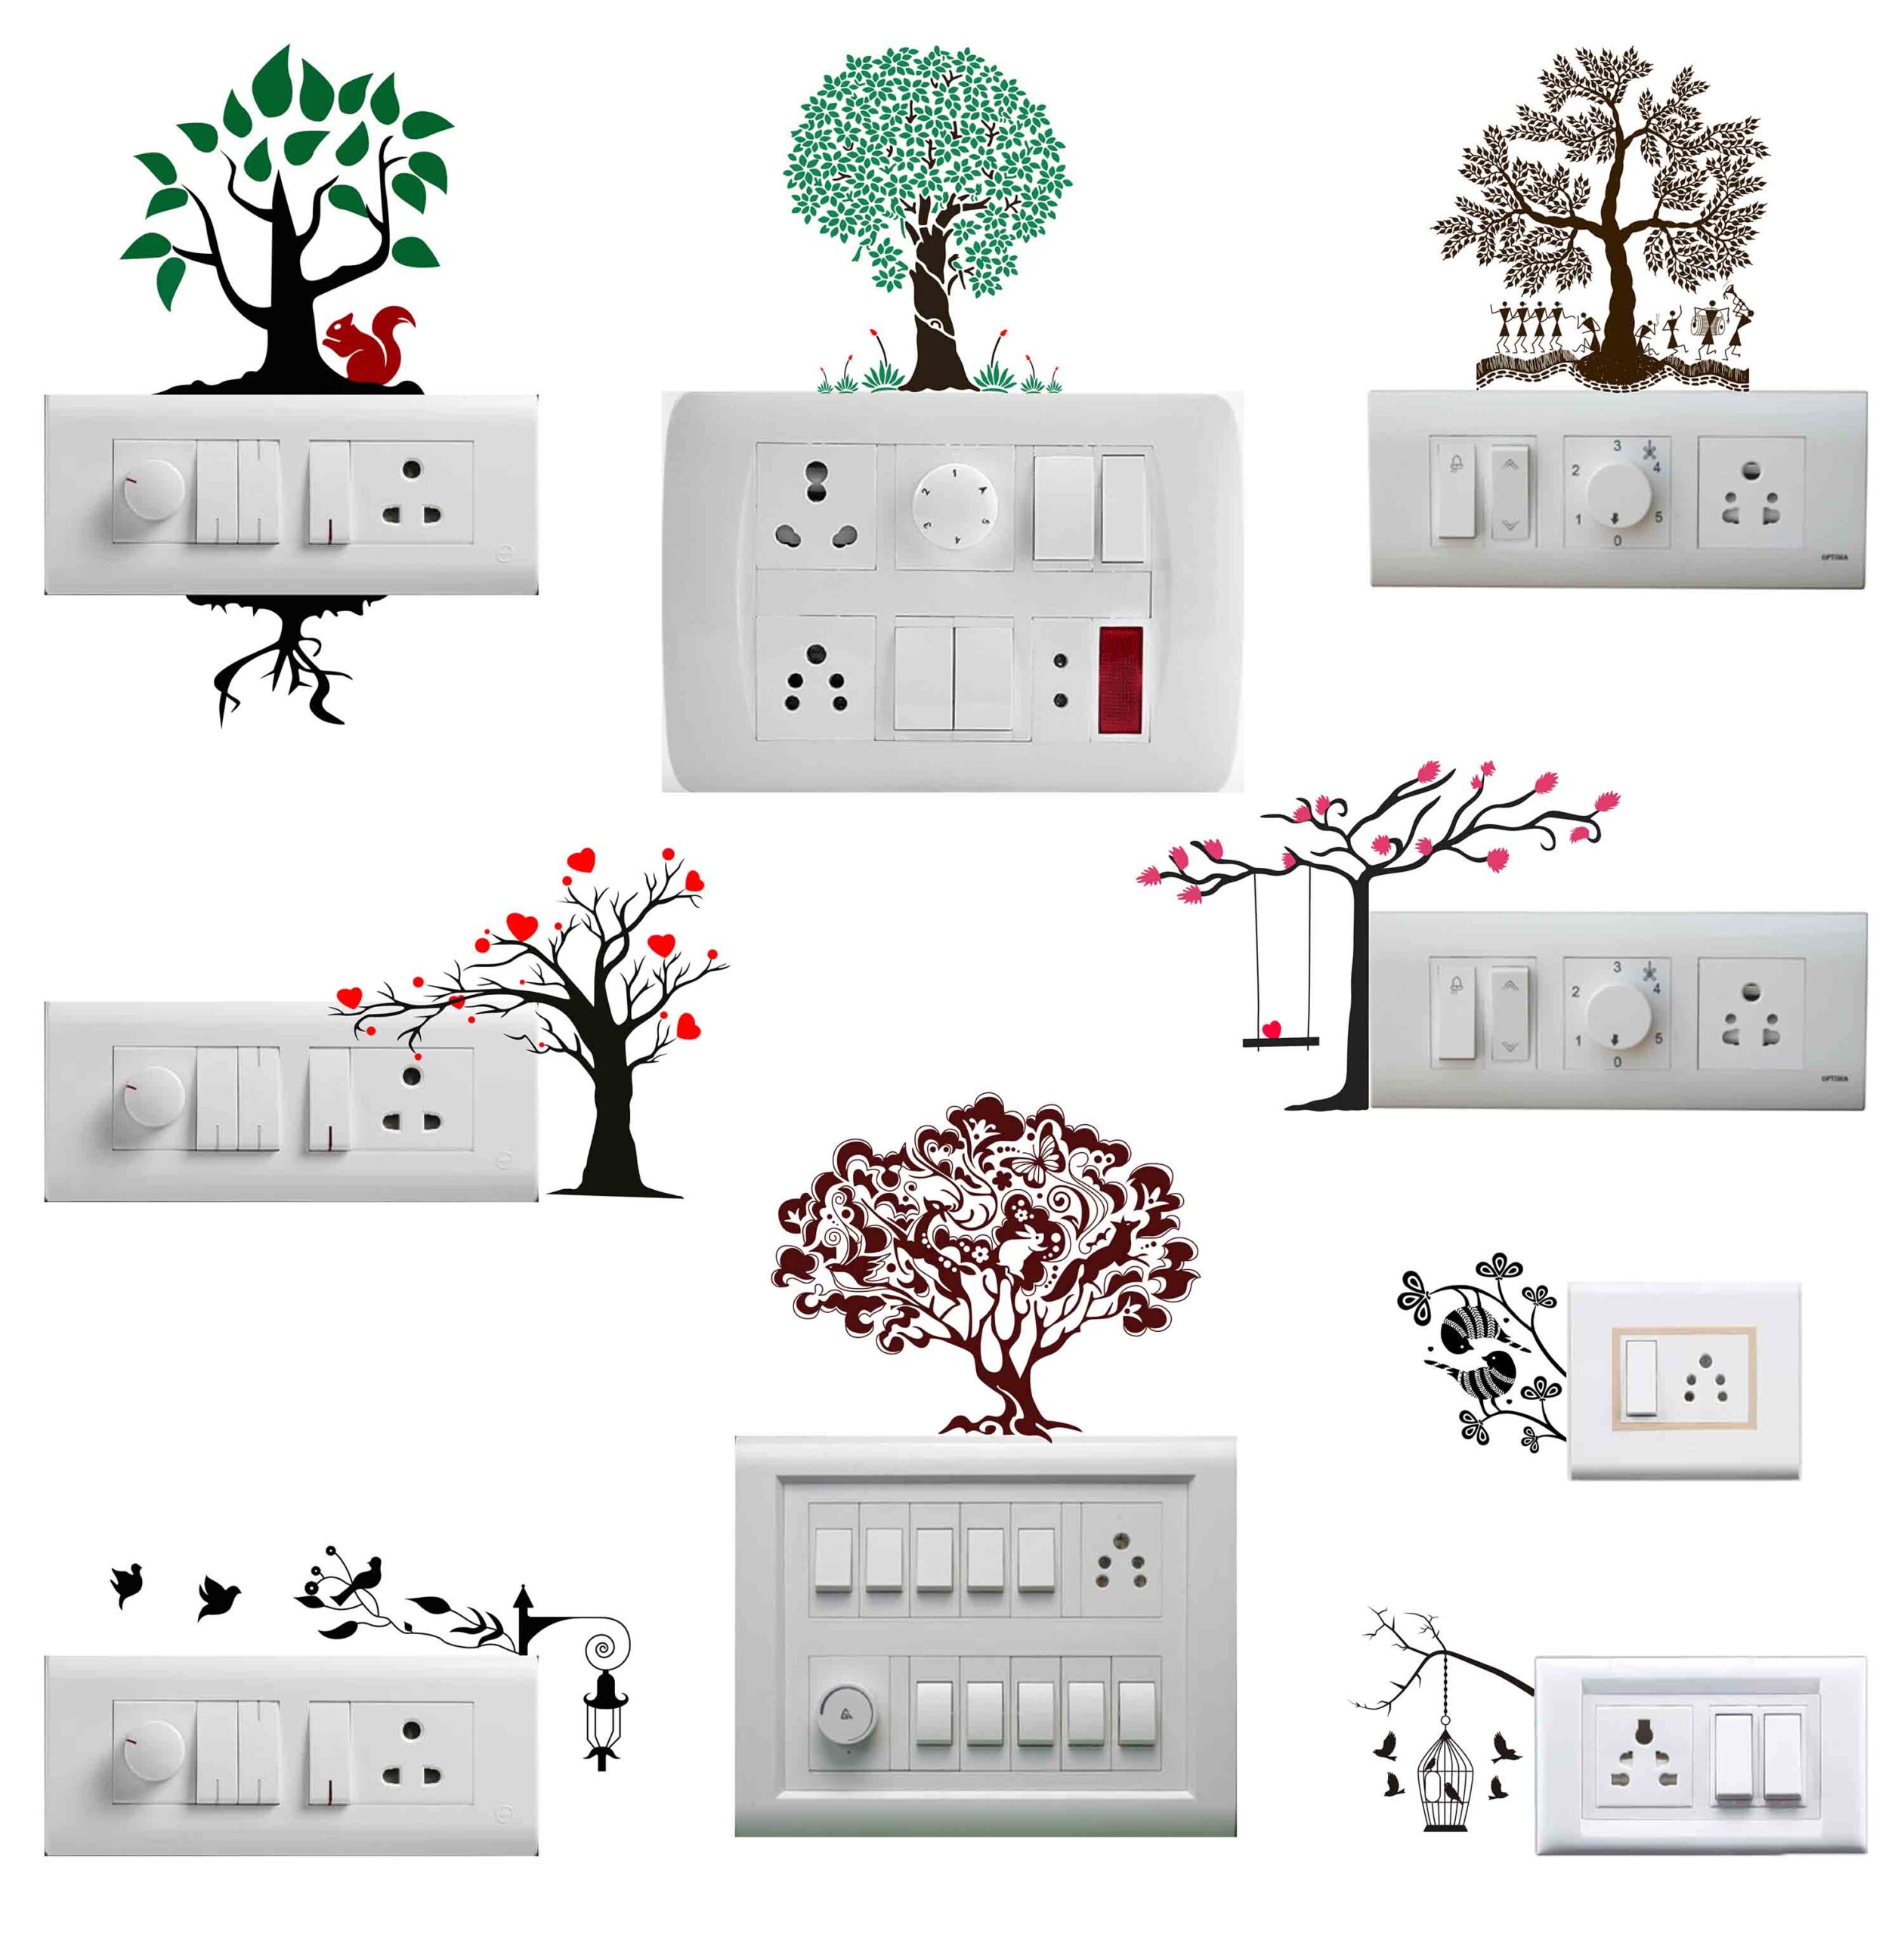 Tree & Leaves Switchboard Sticker